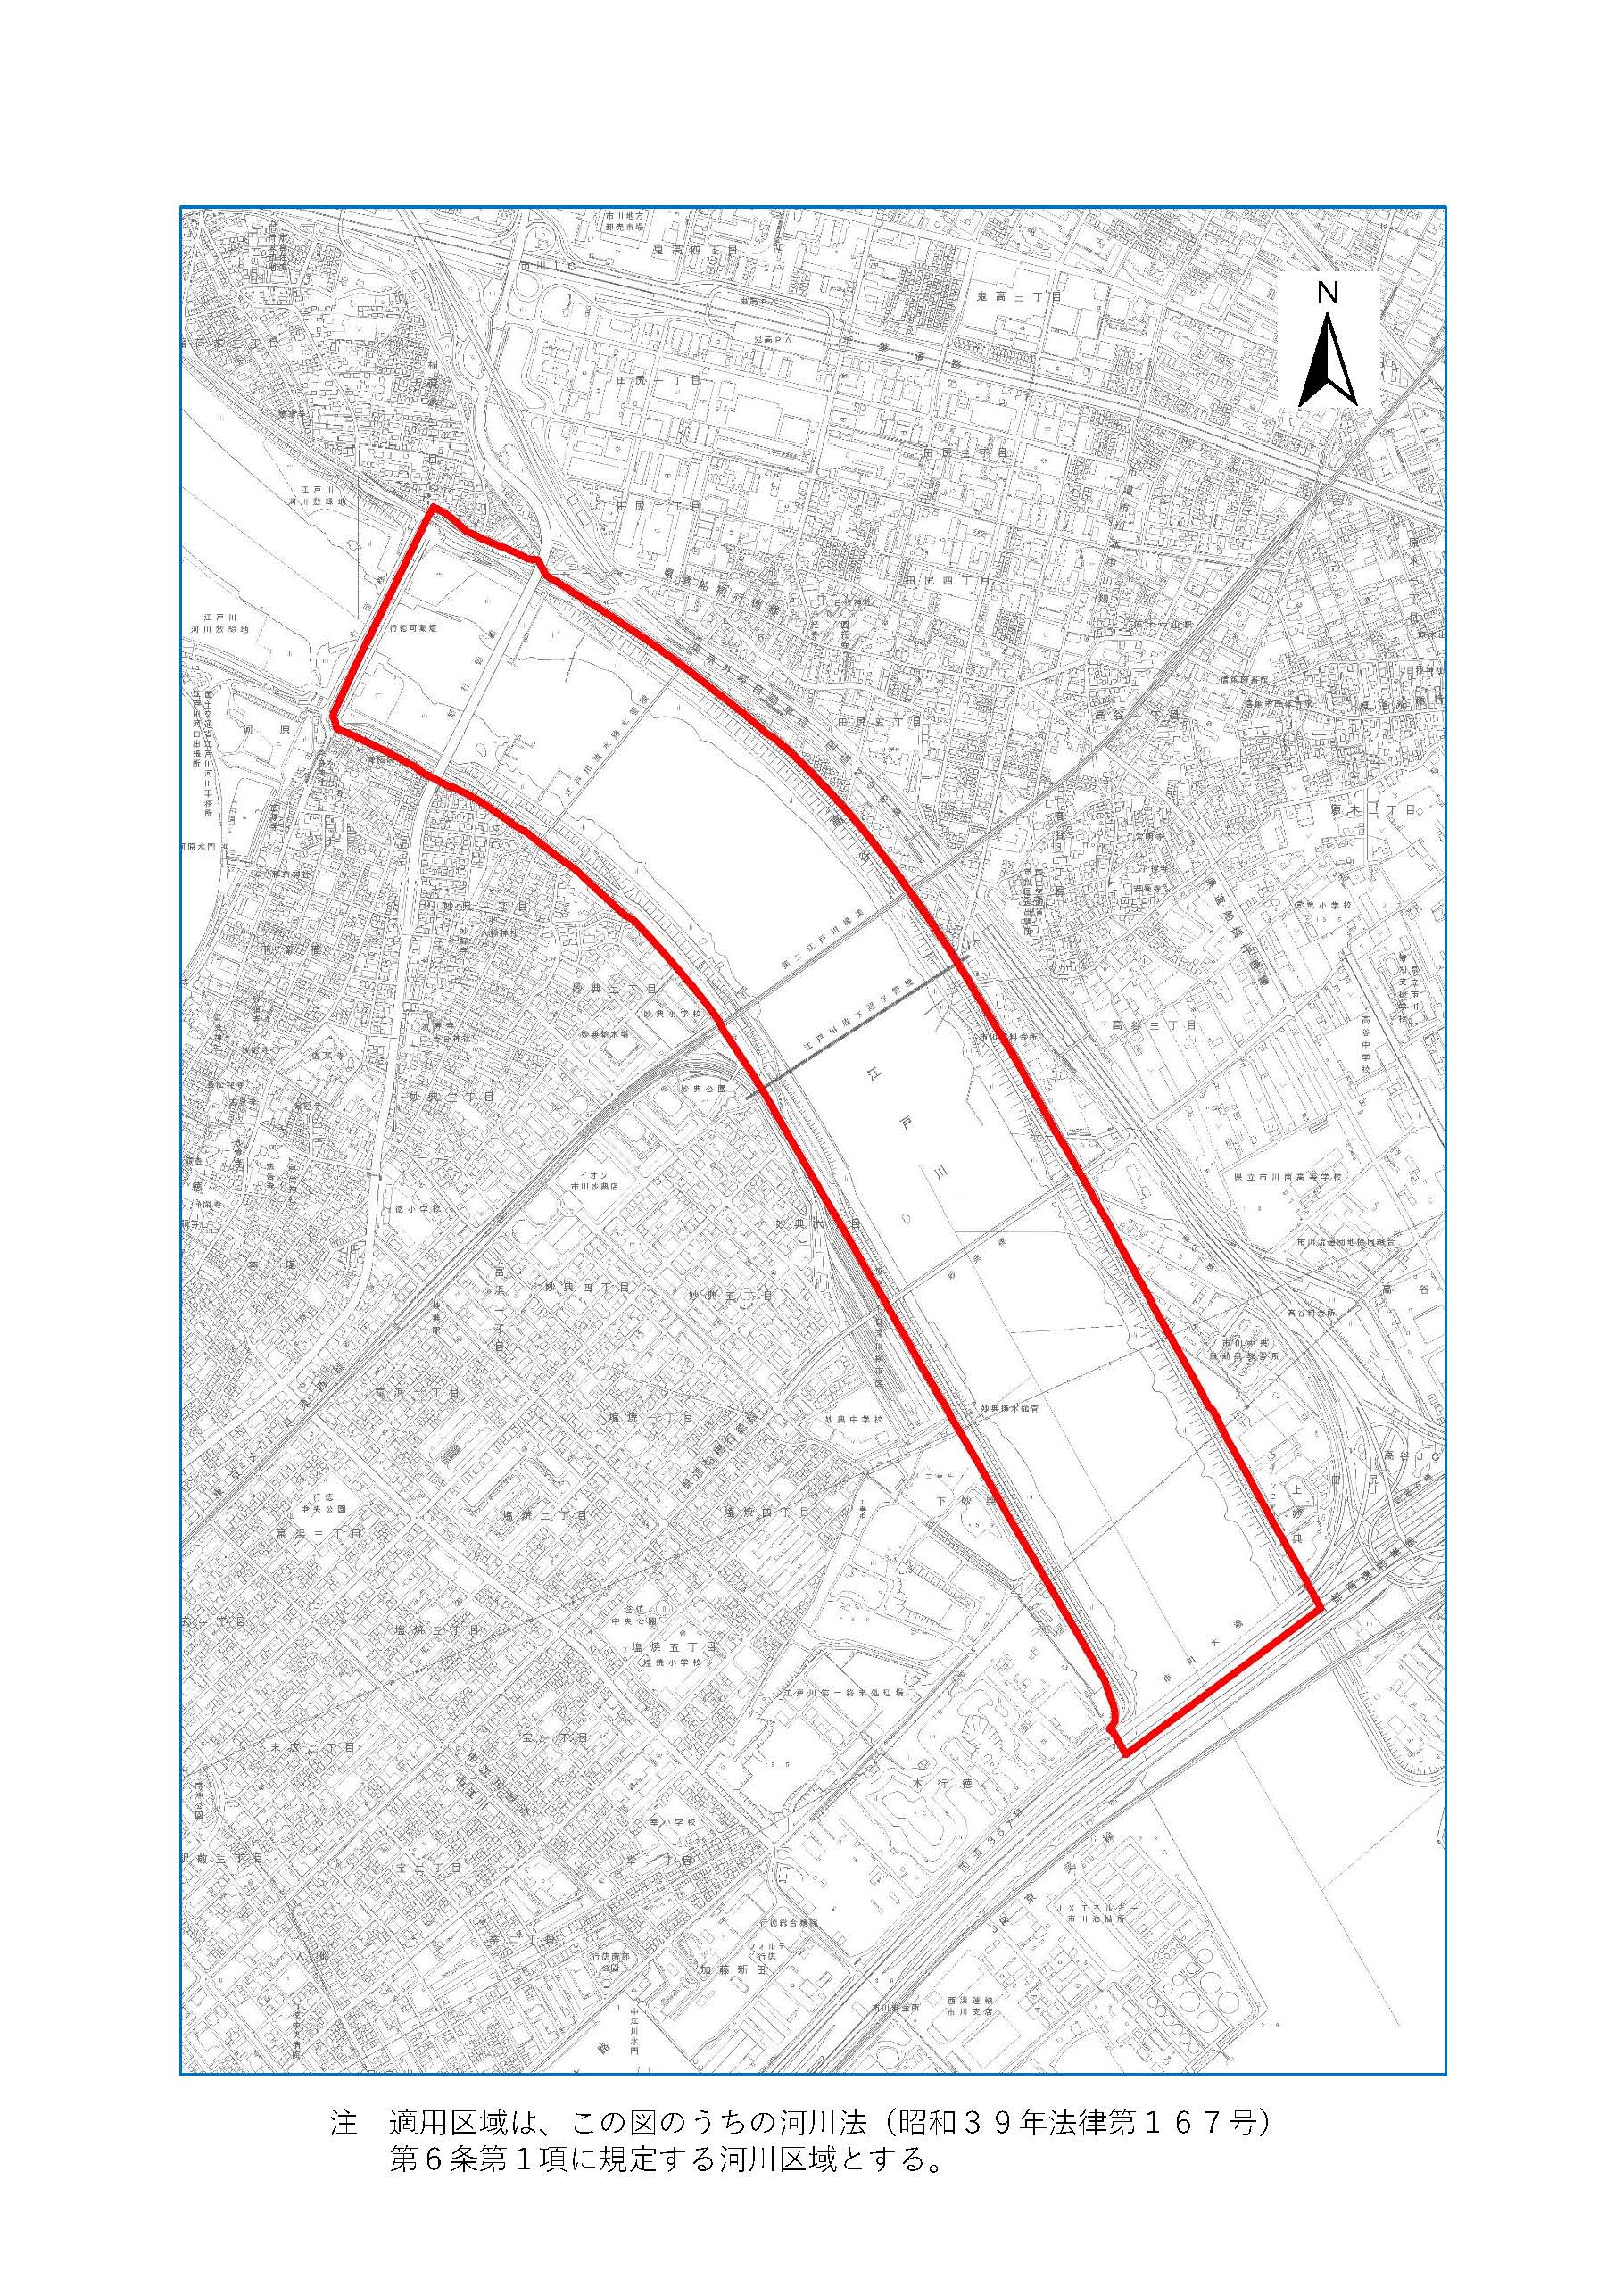 適用区域の地図：行徳橋から首都高速湾岸線までの範囲。注意、適用区域はこの図のうち河川法第6条第1項に規定する河川区域とする。